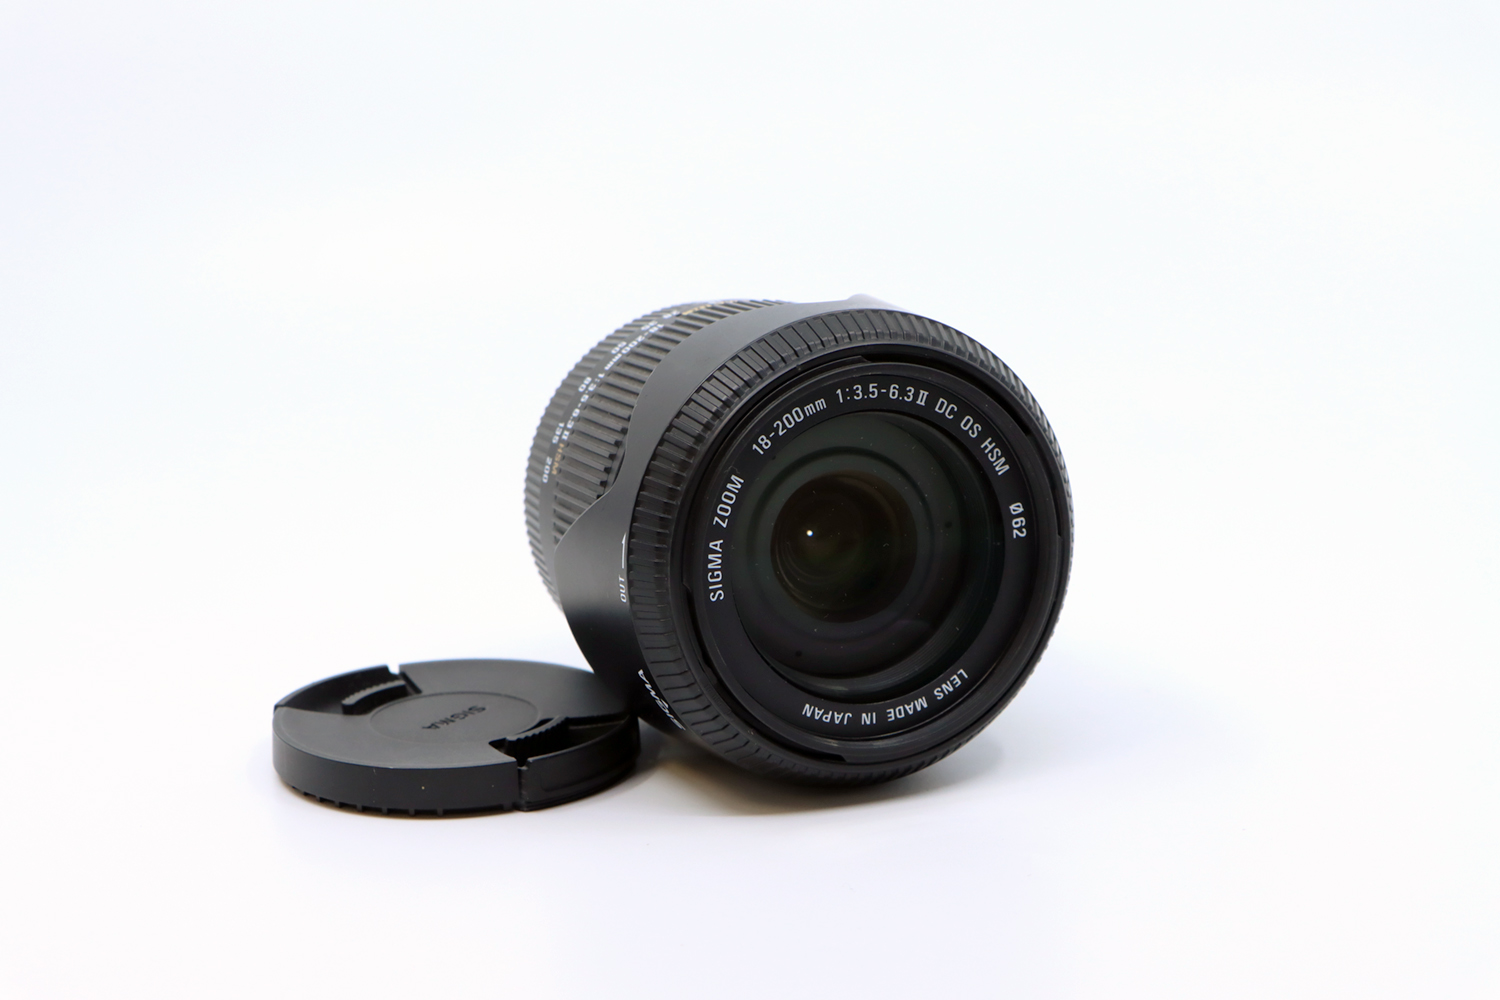 Nikon D300 + Sigma 18-200mm | IMG_6164.JPG